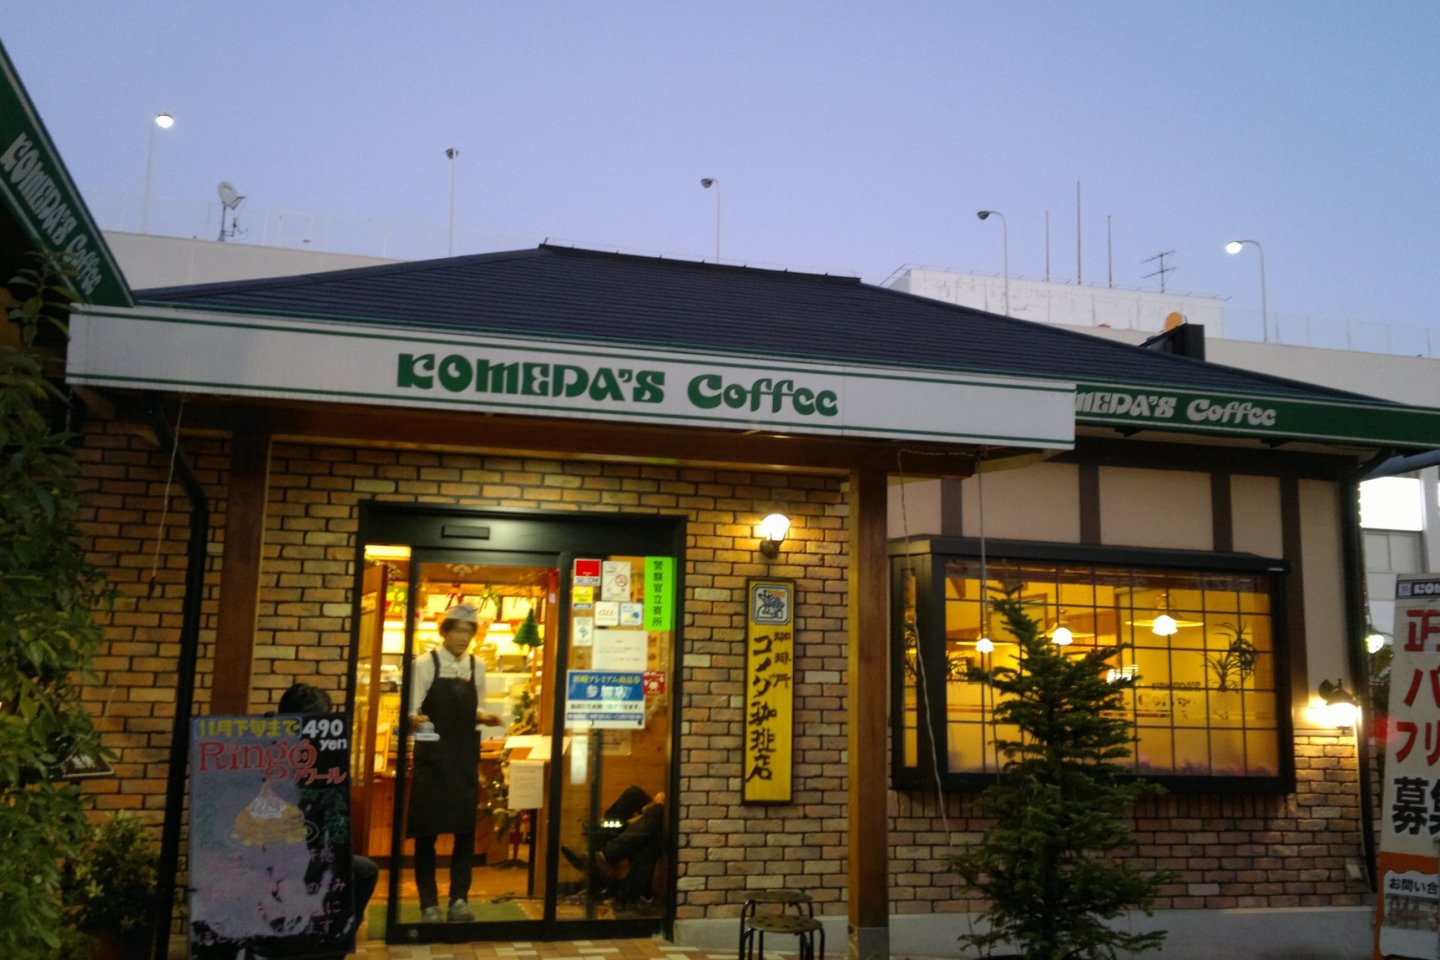 Bangunan Komeda's Coffee yang memancarkan kehangatan.